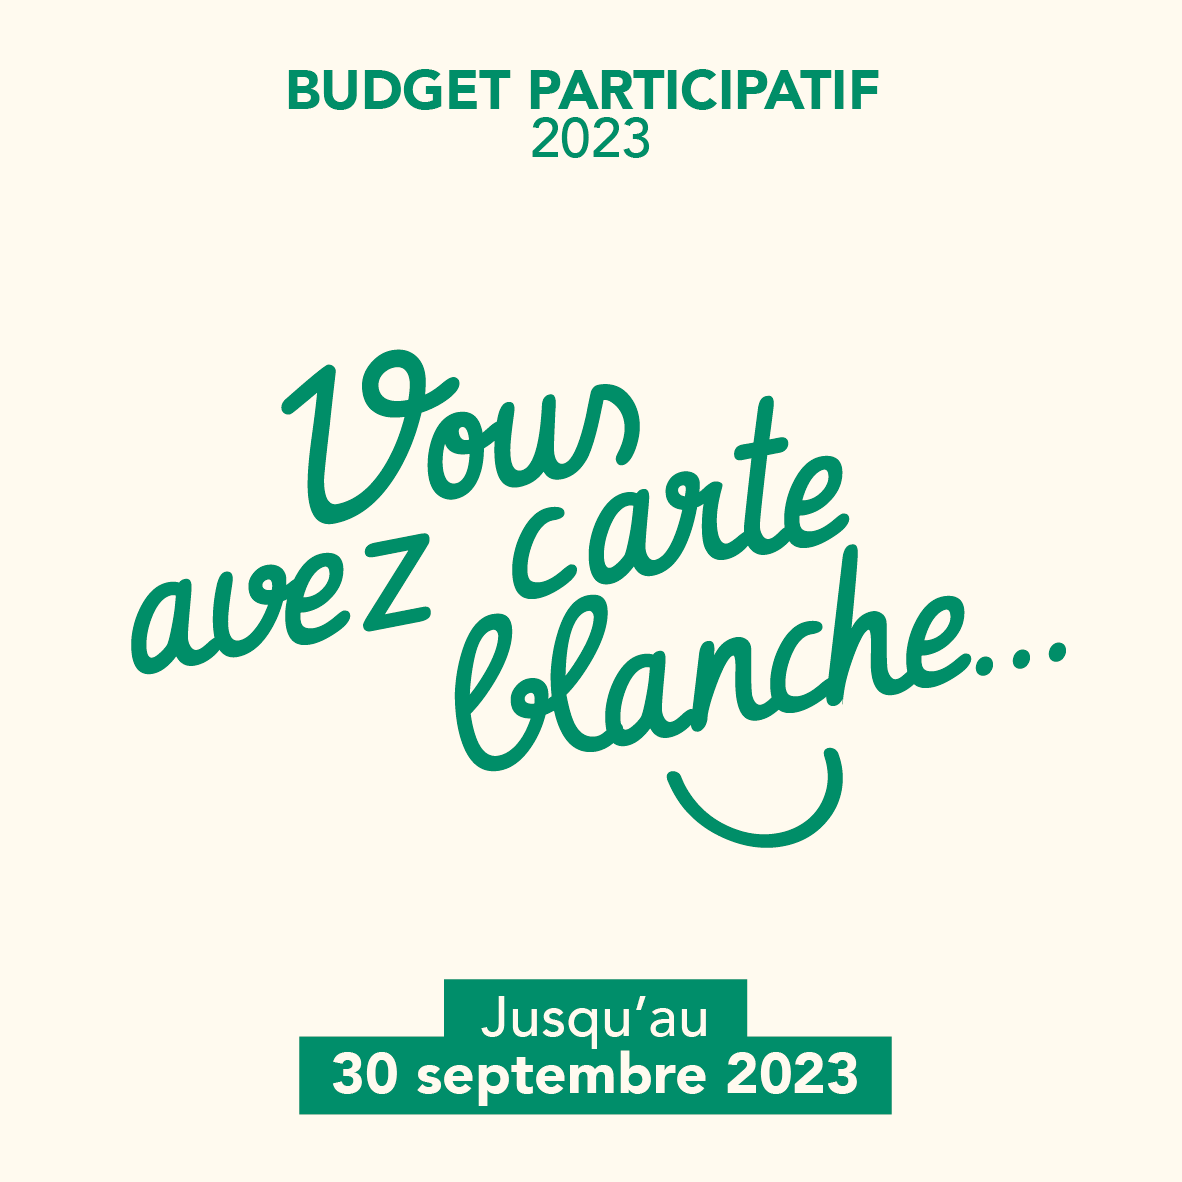 Budget Participatif 2023